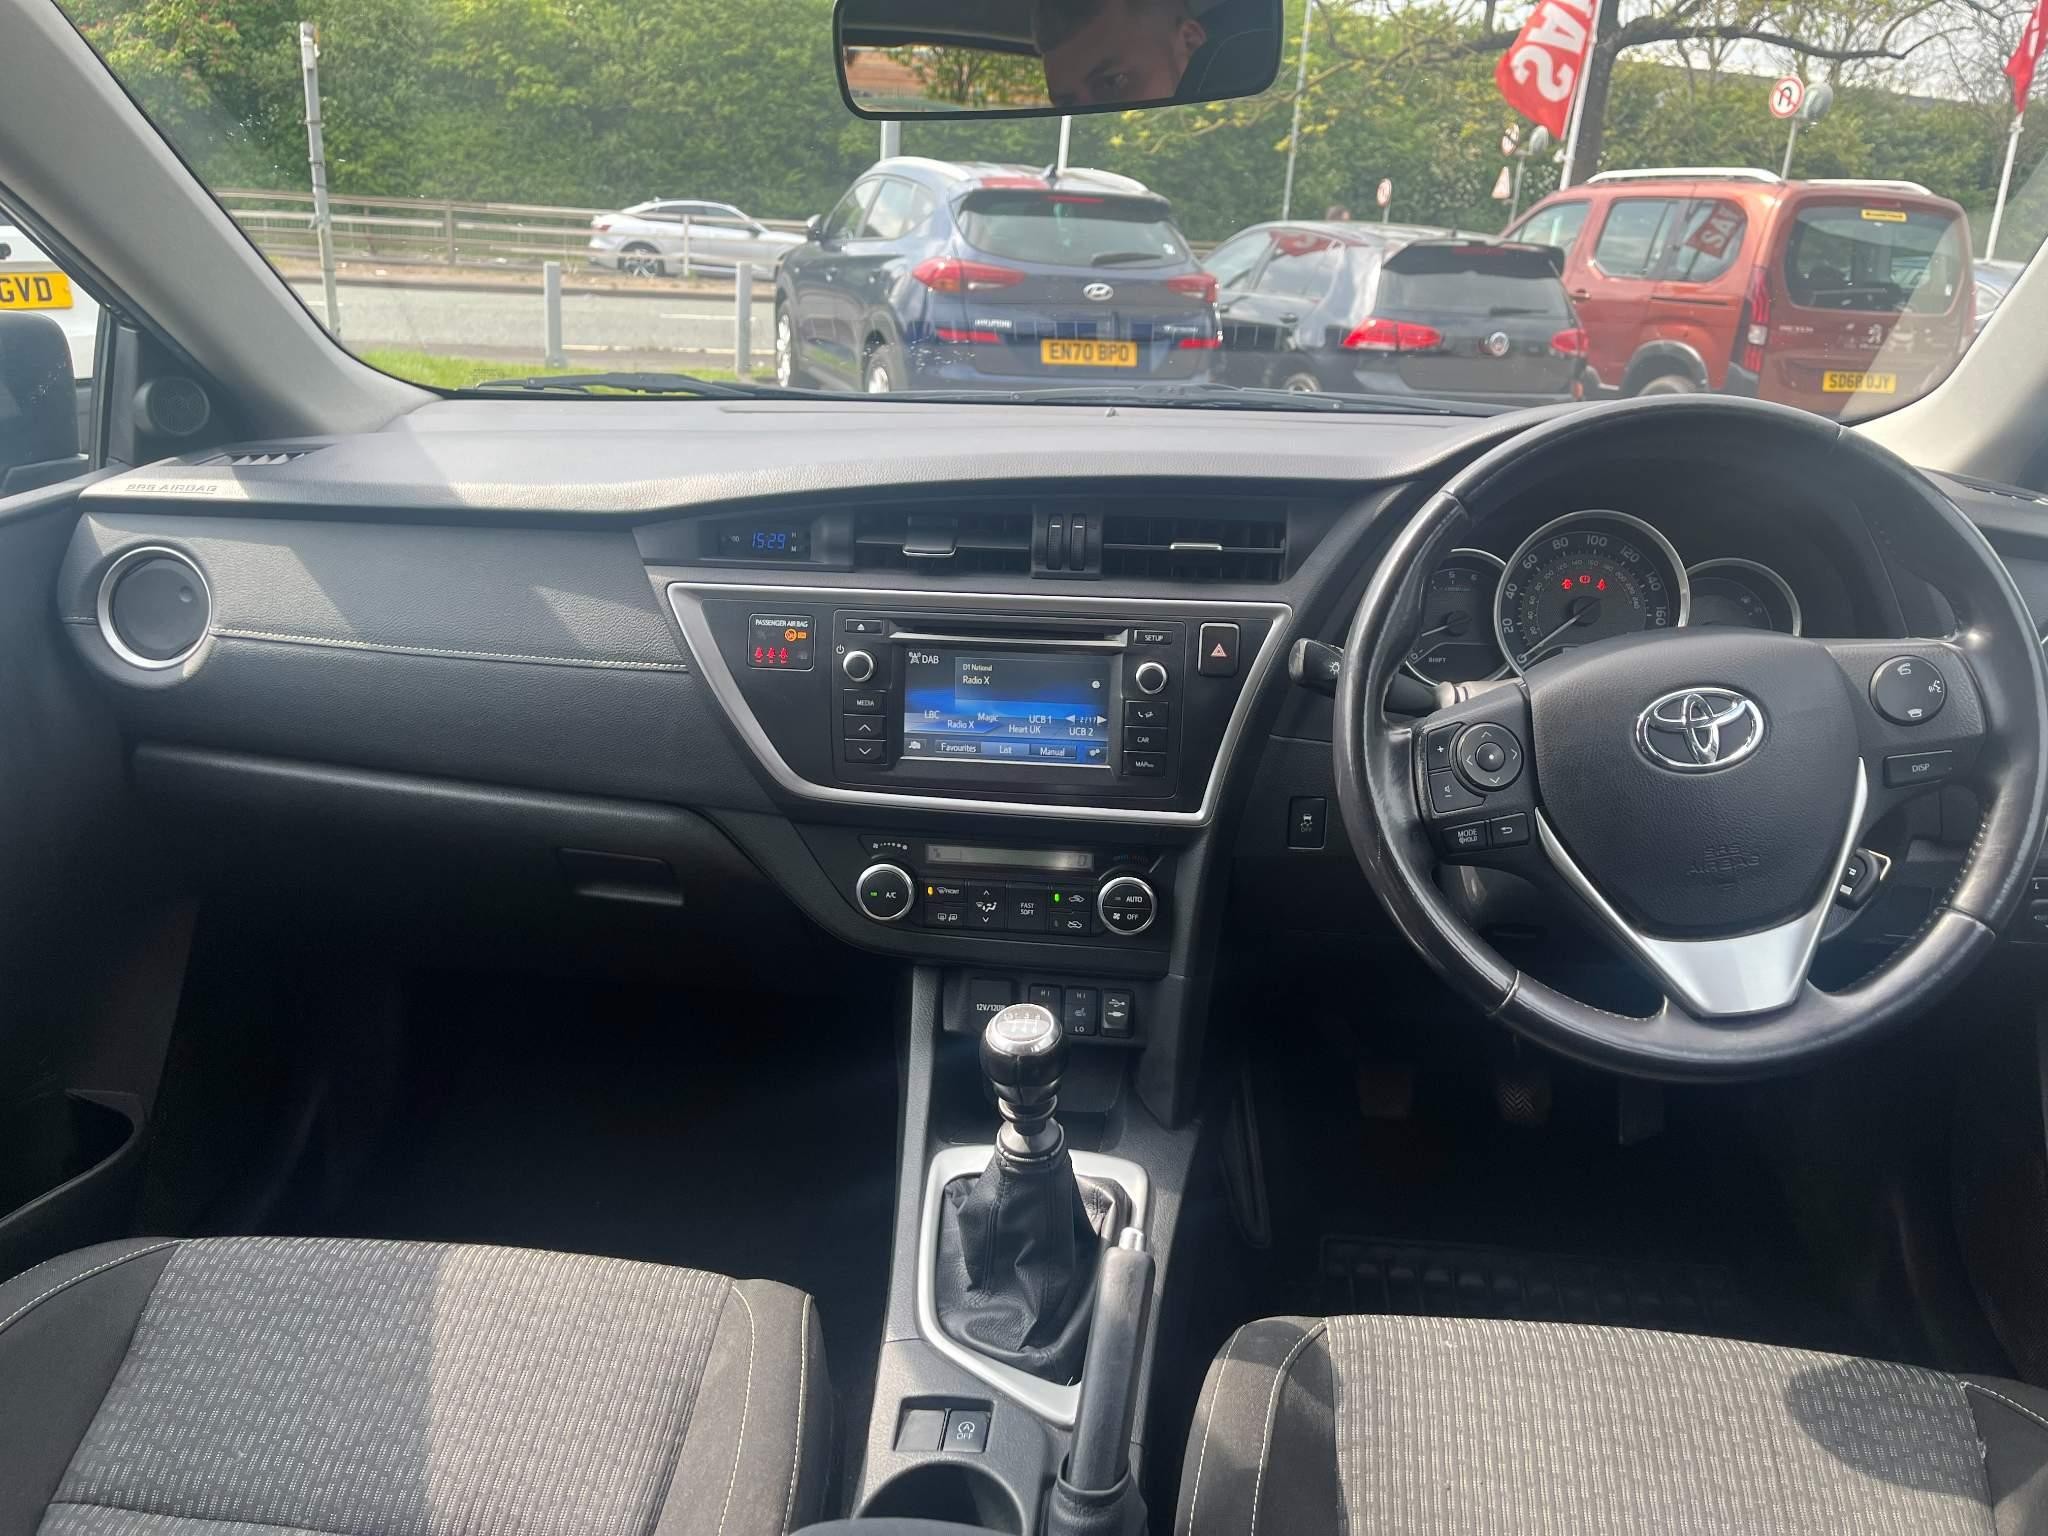 Toyota Auris 1.4 D-4D Icon Plus Euro 5 (s/s) 5dr (FM15WFO) image 15